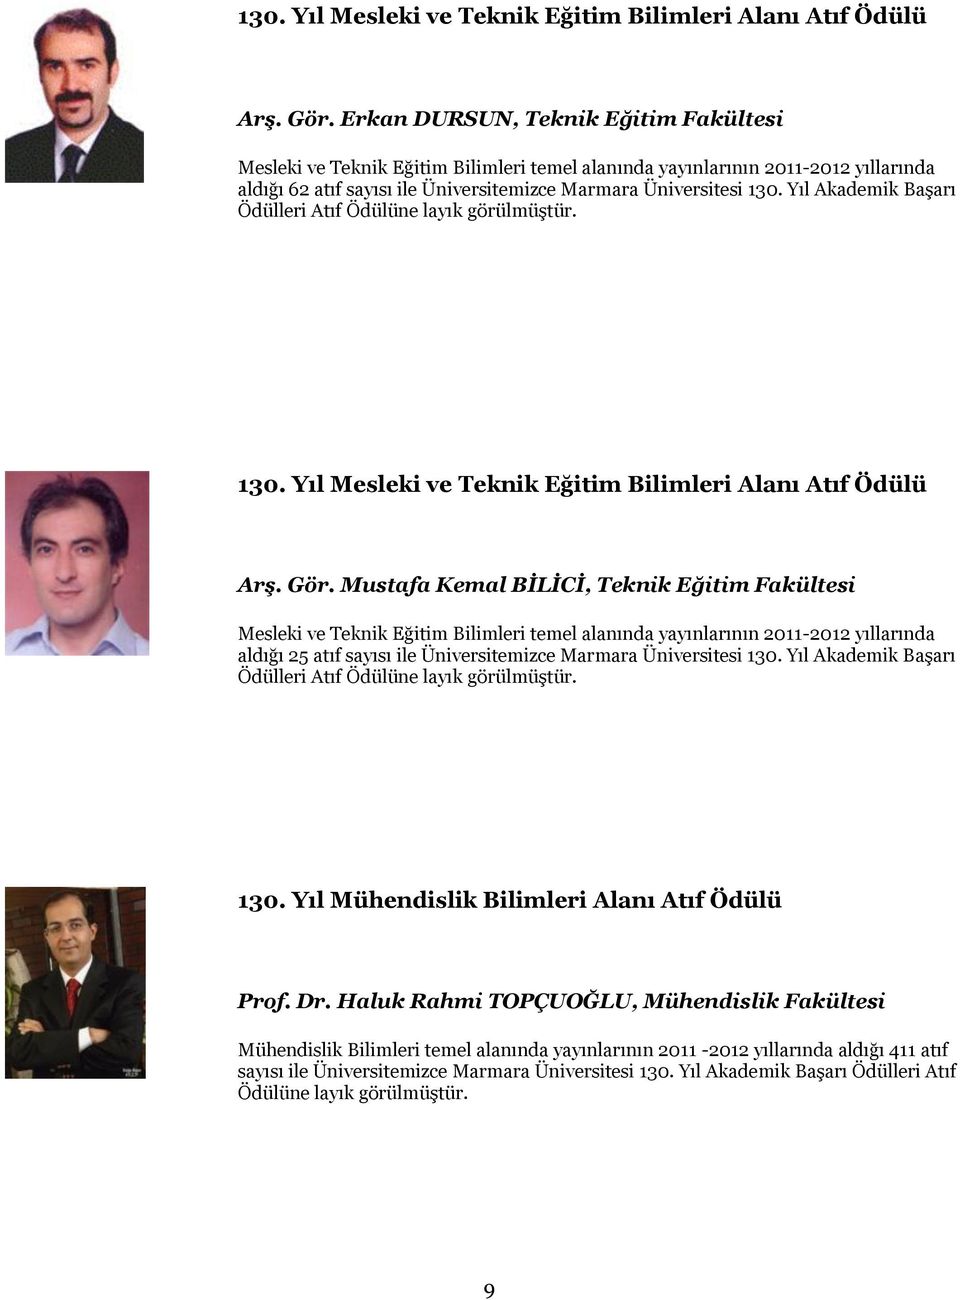 Yıl Akademik Başarı Ödülleri Atıf  Mustafa Kemal BĠLĠCĠ, Teknik Eğitim Fakültesi Mesleki ve Teknik Eğitim Bilimleri temel alanında yayınlarının 2011-2012 yıllarında aldığı 25 atıf sayısı ile